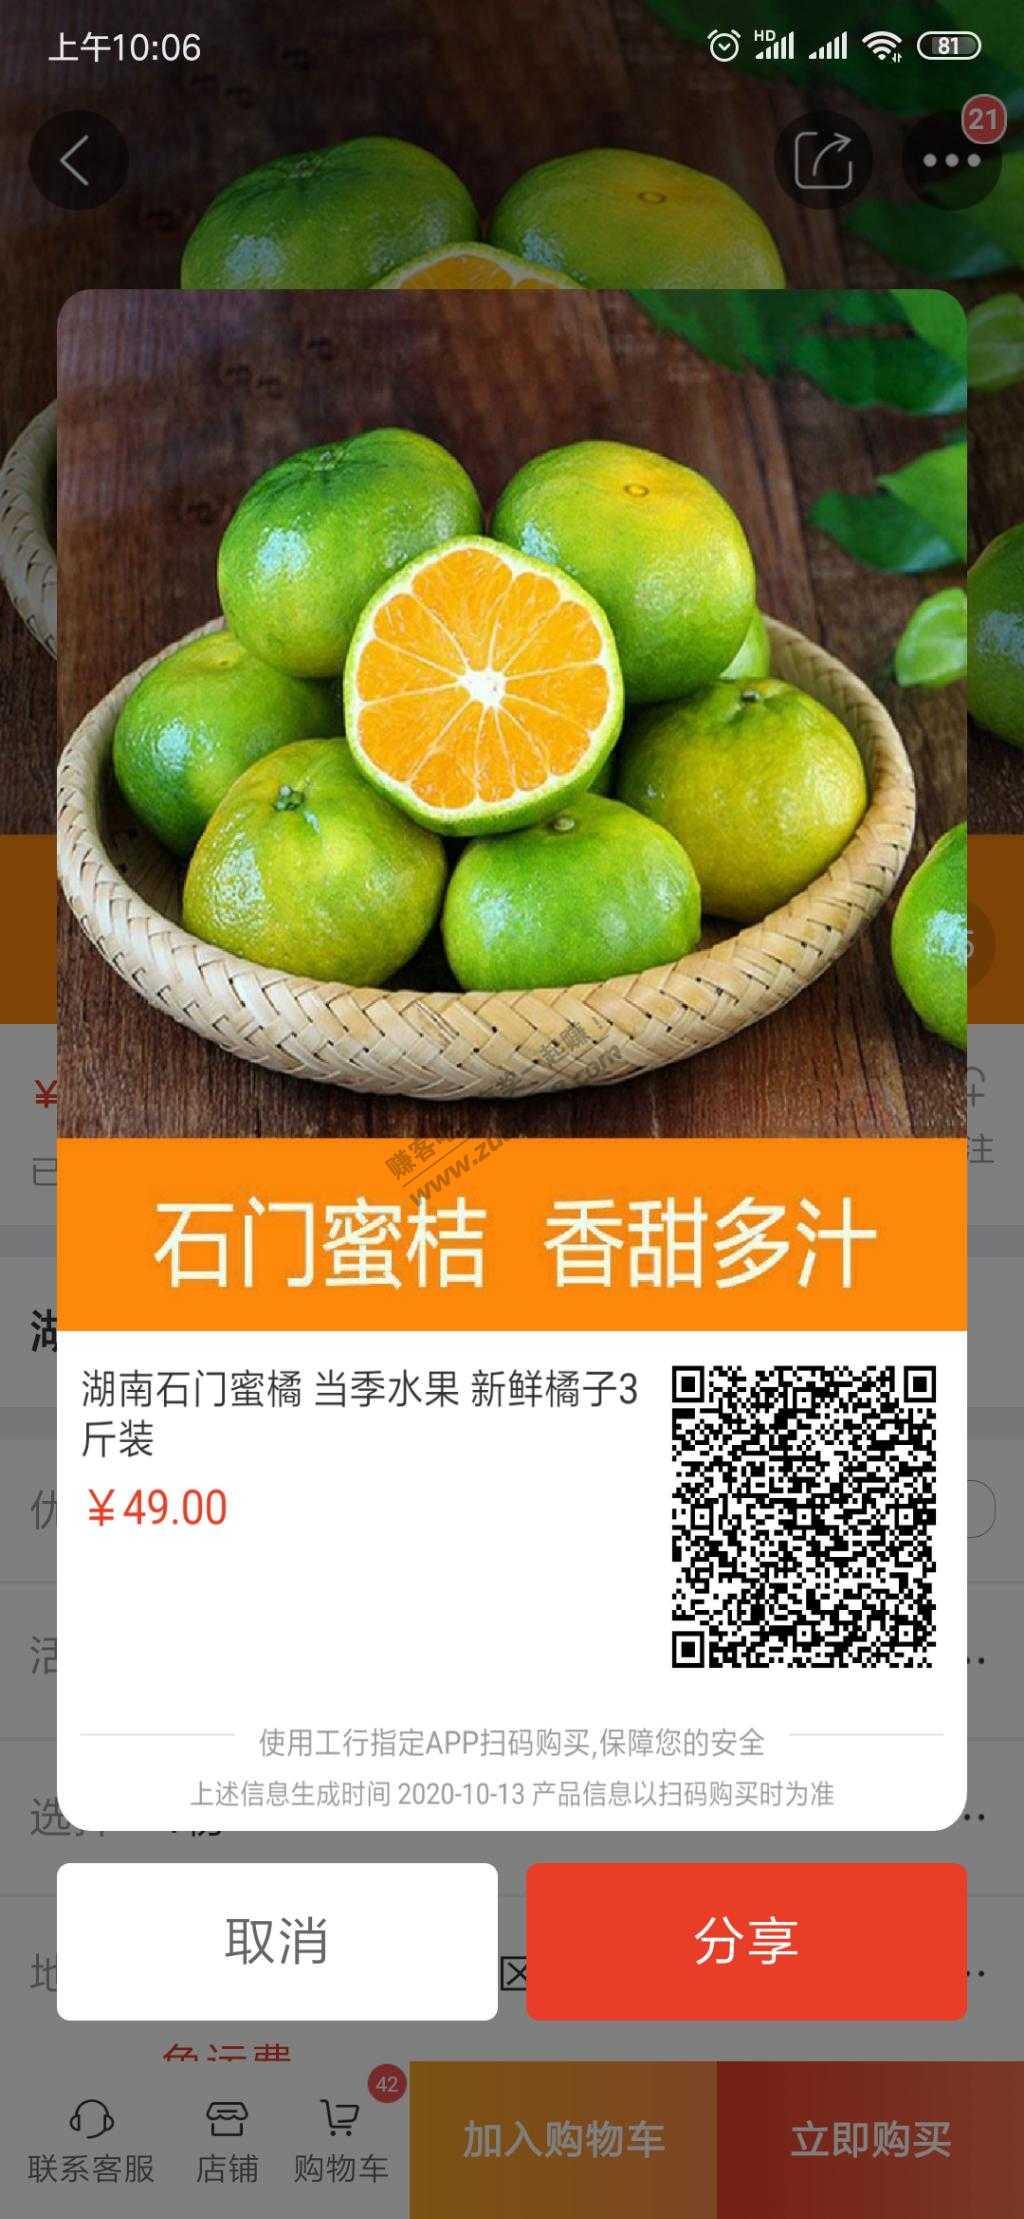 容易购1元3斤橘子-惠小助(52huixz.com)